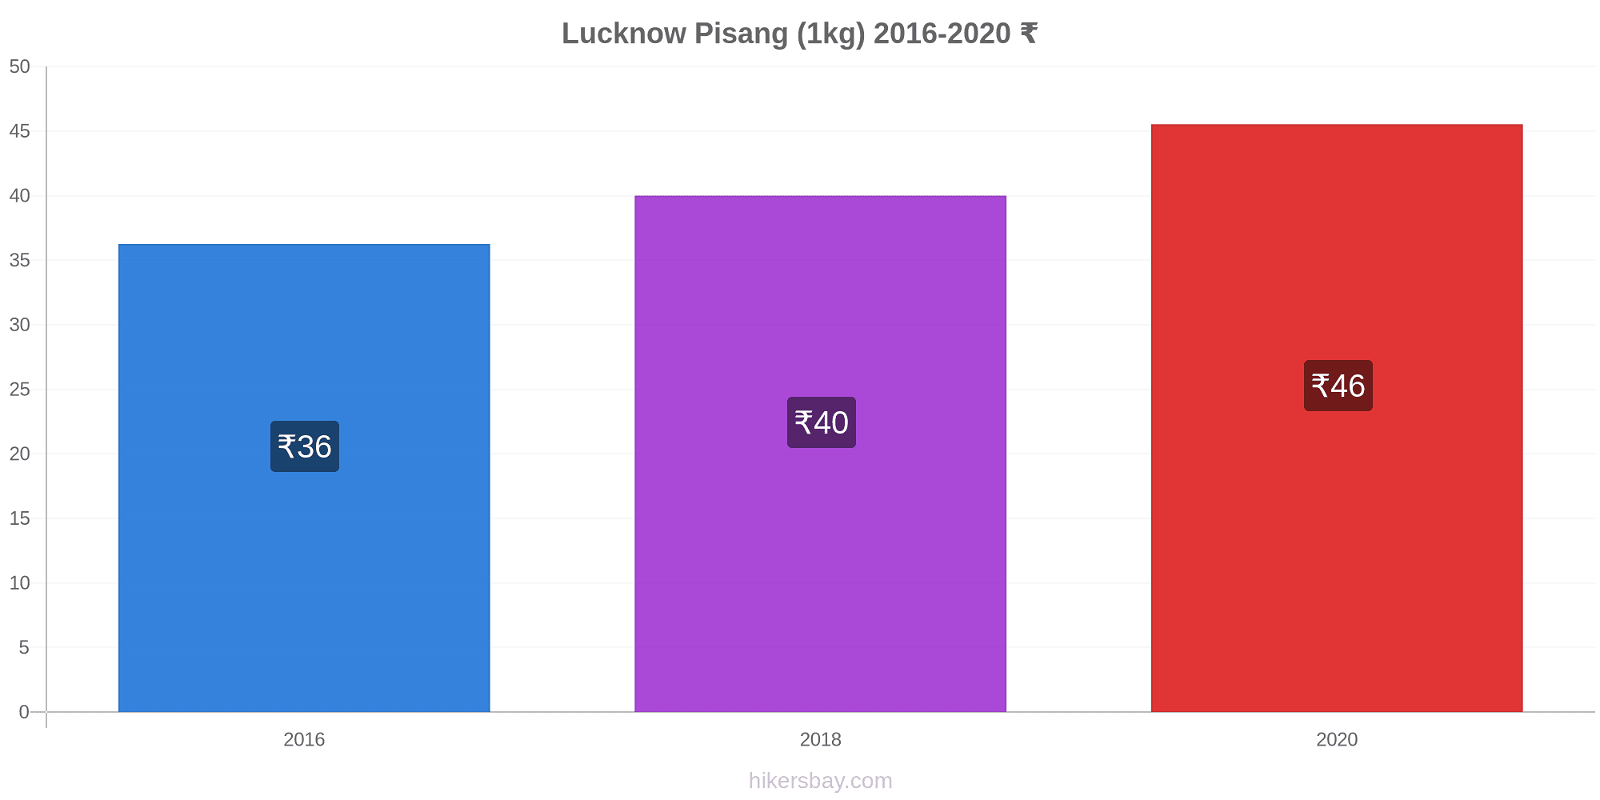 Lucknow perubahan harga Pisang (1kg) hikersbay.com